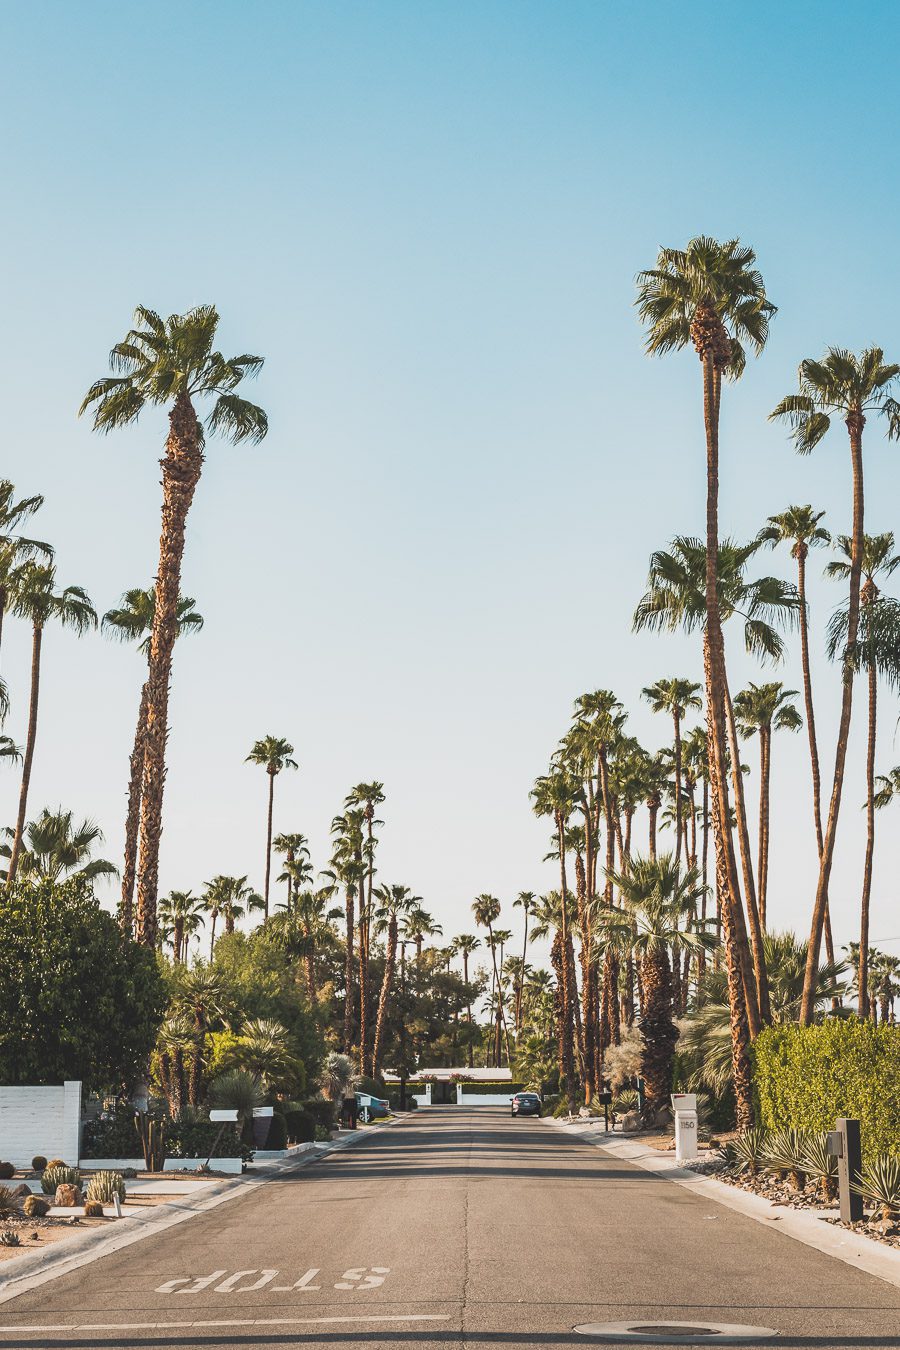 Palm Springs est une oasis ensoleillée dans le désert californien, offrant aux visiteurs une chance de se détendre et de se ressourcer grâce à sa beauté naturelle, ses équipements modernes et son architecture incroyable. Palm Springs a quelque chose pour tout le monde, y compris pour les amoureux de photographie et ceux en quête de dépaysement. Venez vous adonner aux innombrables activités et attractions que la ville a à offrir et découvrez la beauté de cet endroit spécial.